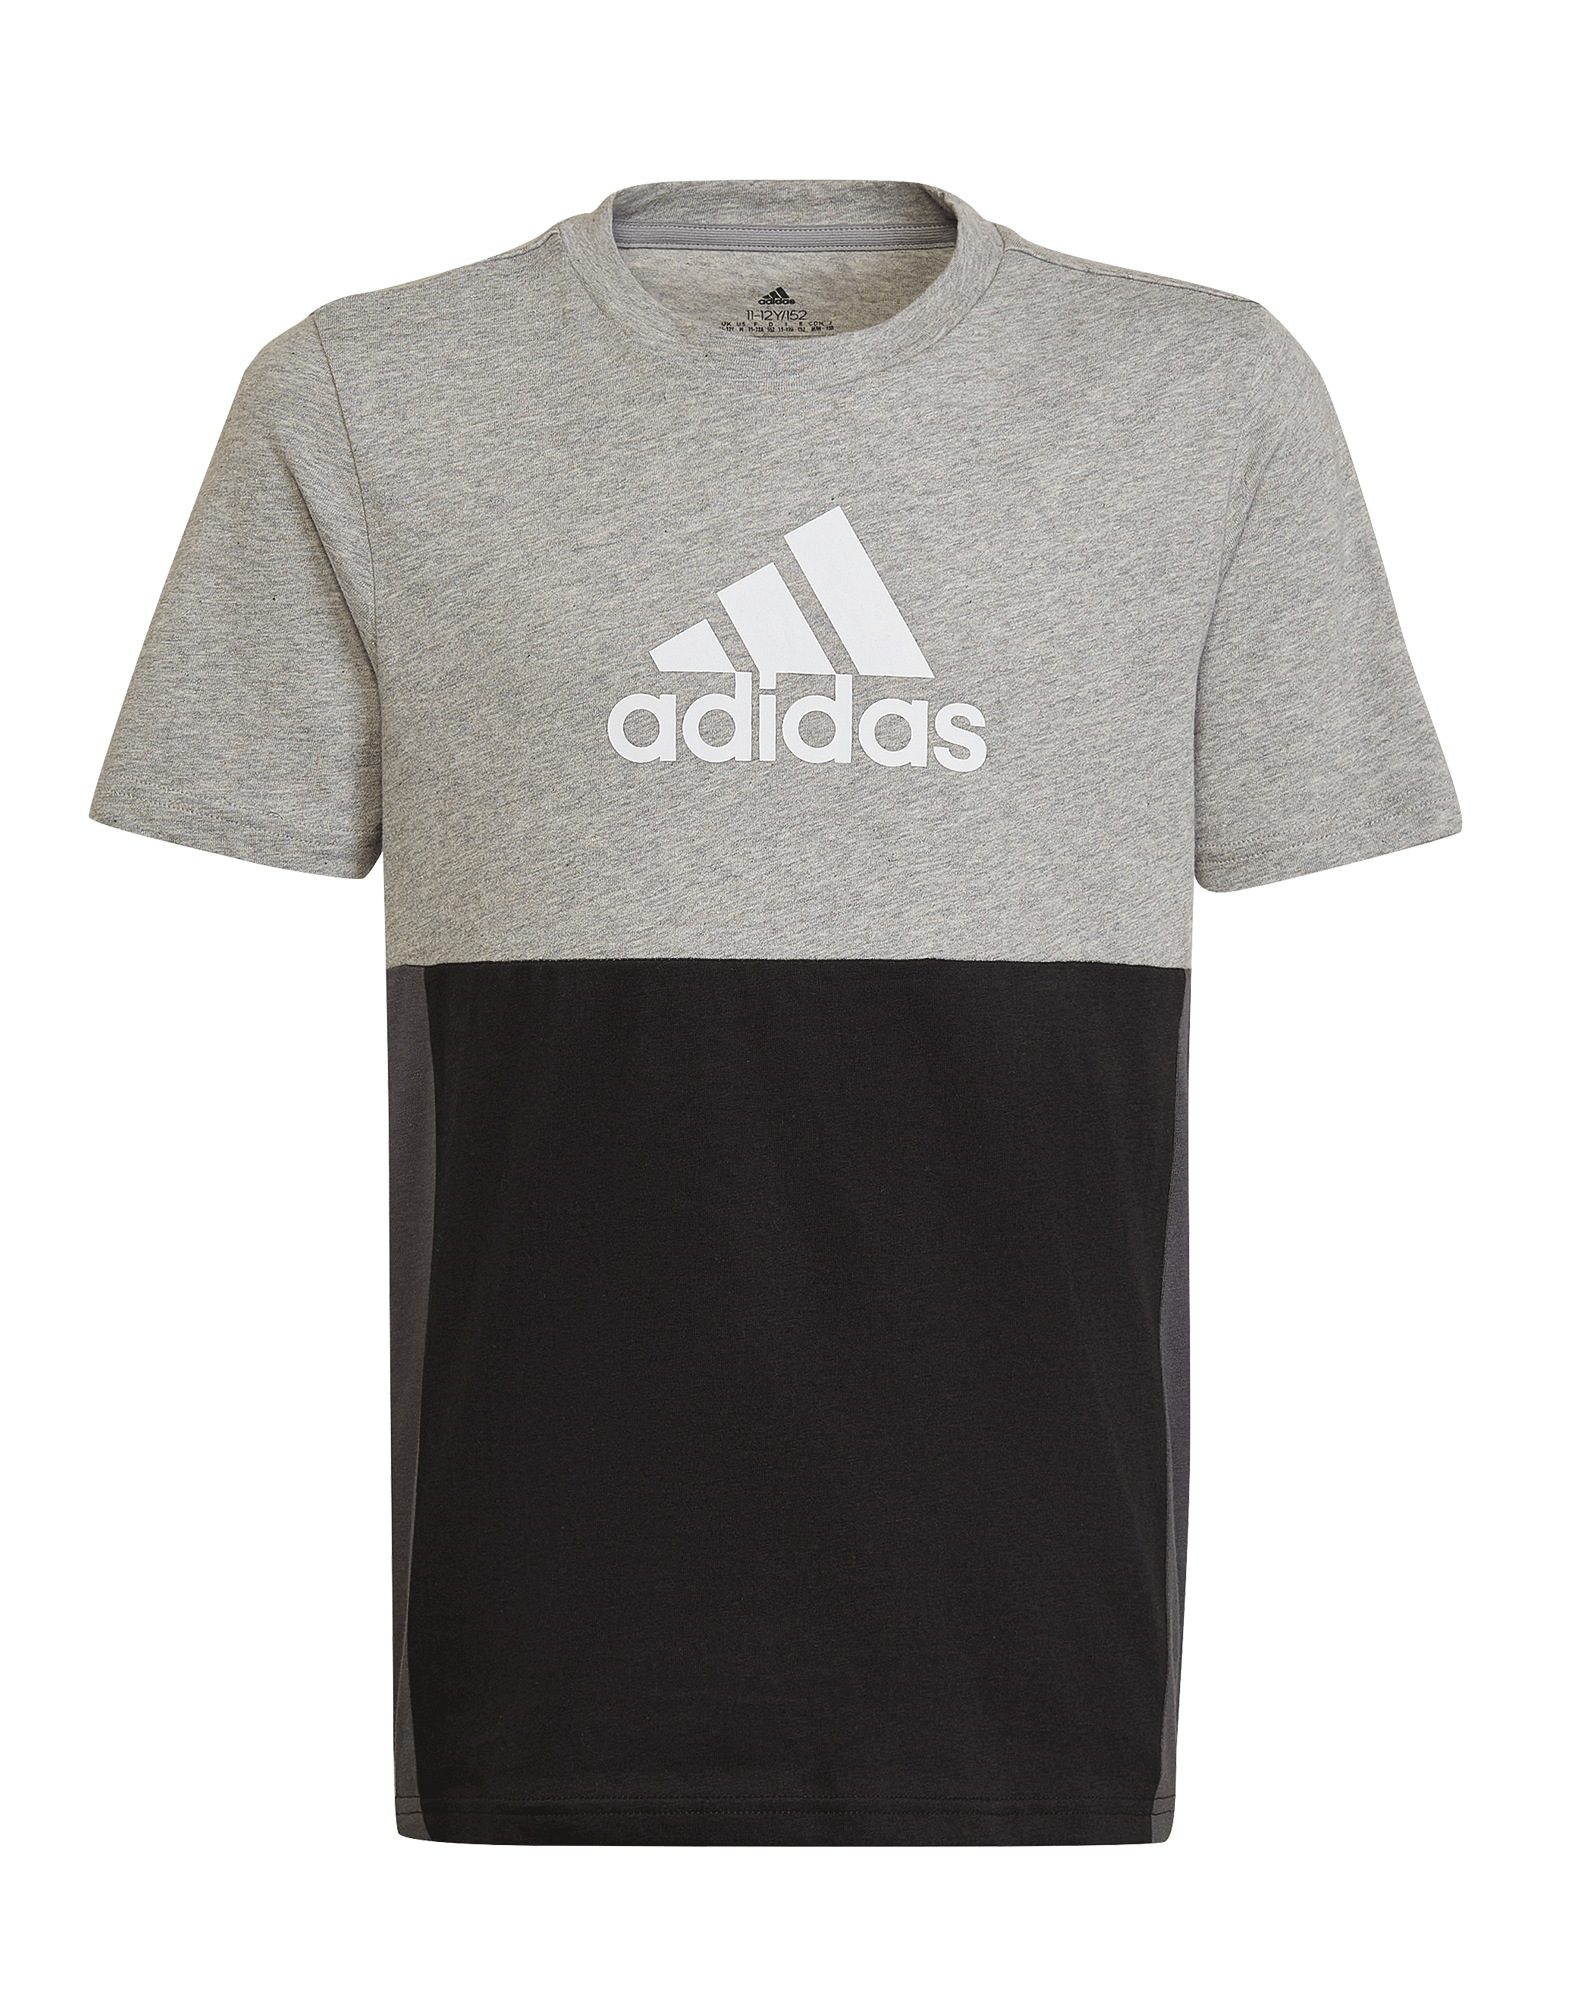 samtale ris Præsident Køb Adidas CB t-shirt til børn i grå-sort